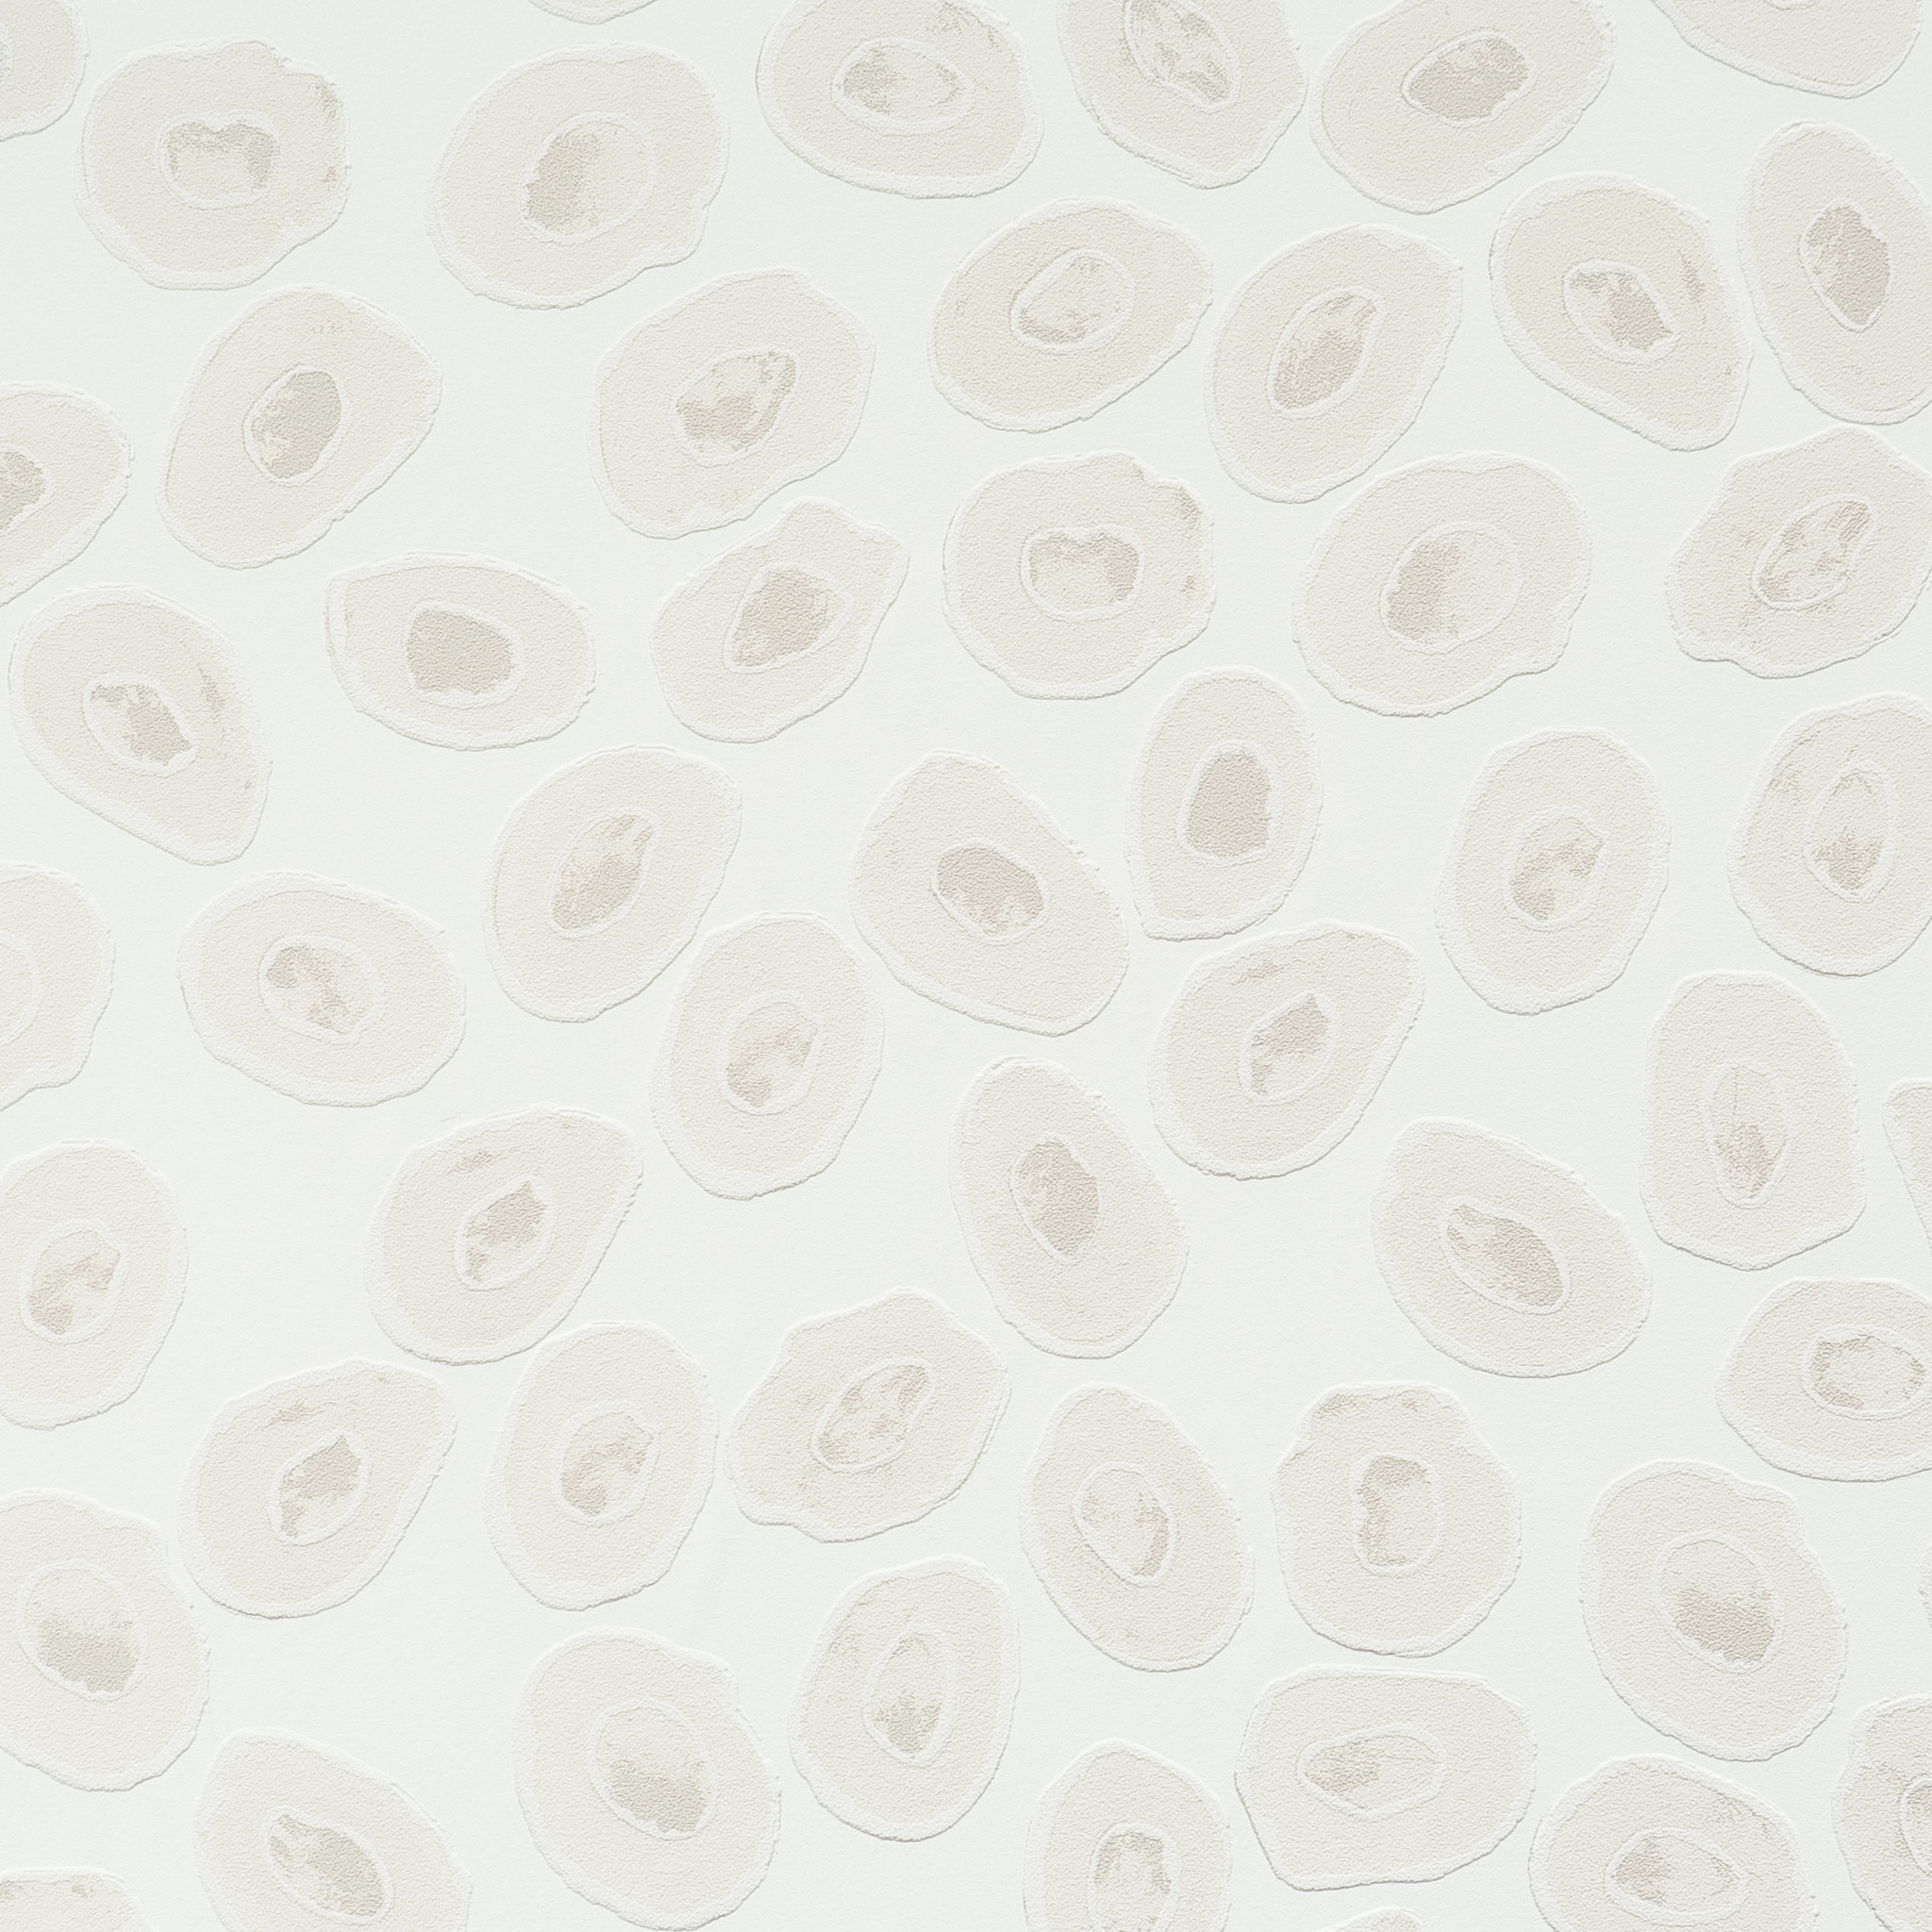 Polka Dot Patterned Wallpaper for Modern Home & Office BURKE DECOR